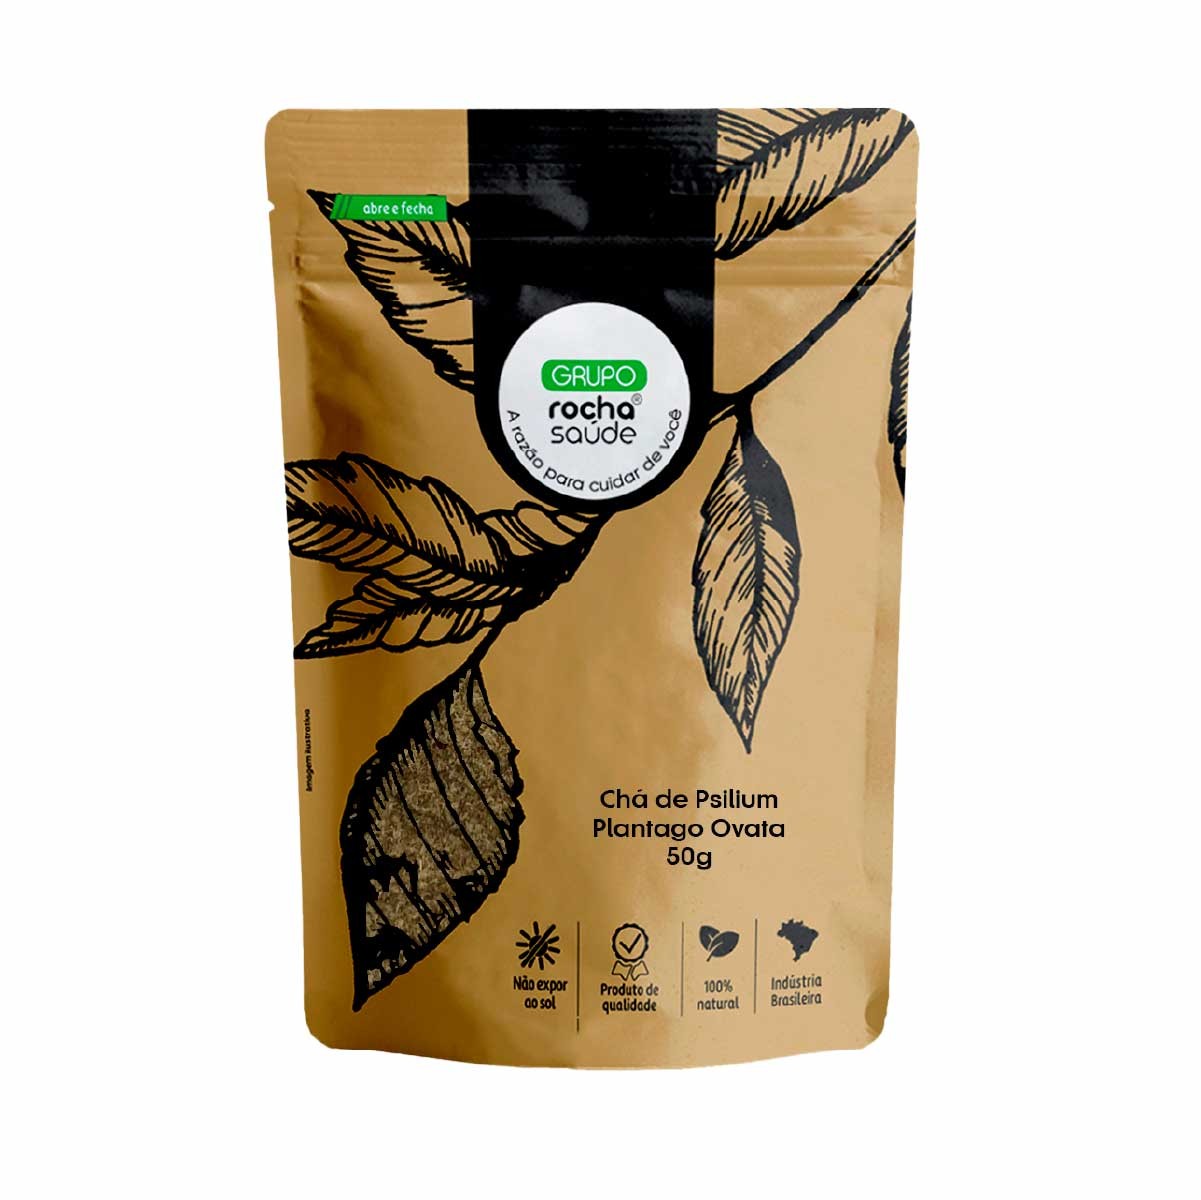 Chá de Psilium – Plantago Ovata – 50g